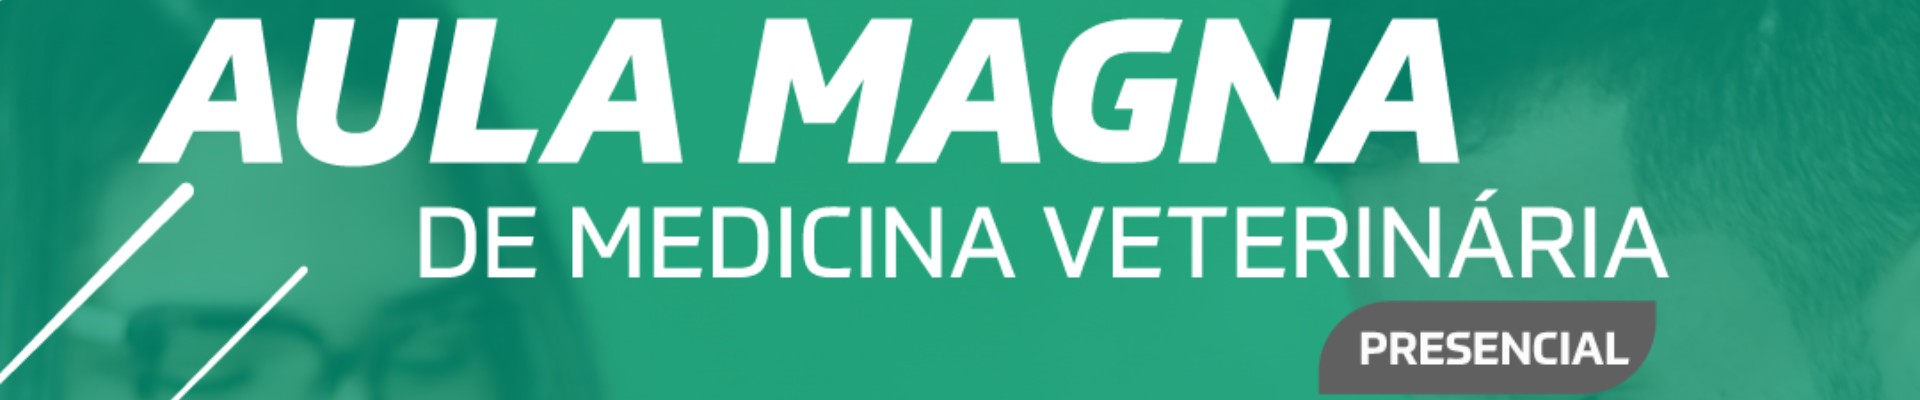 Aula Magna Medicina Veterinária